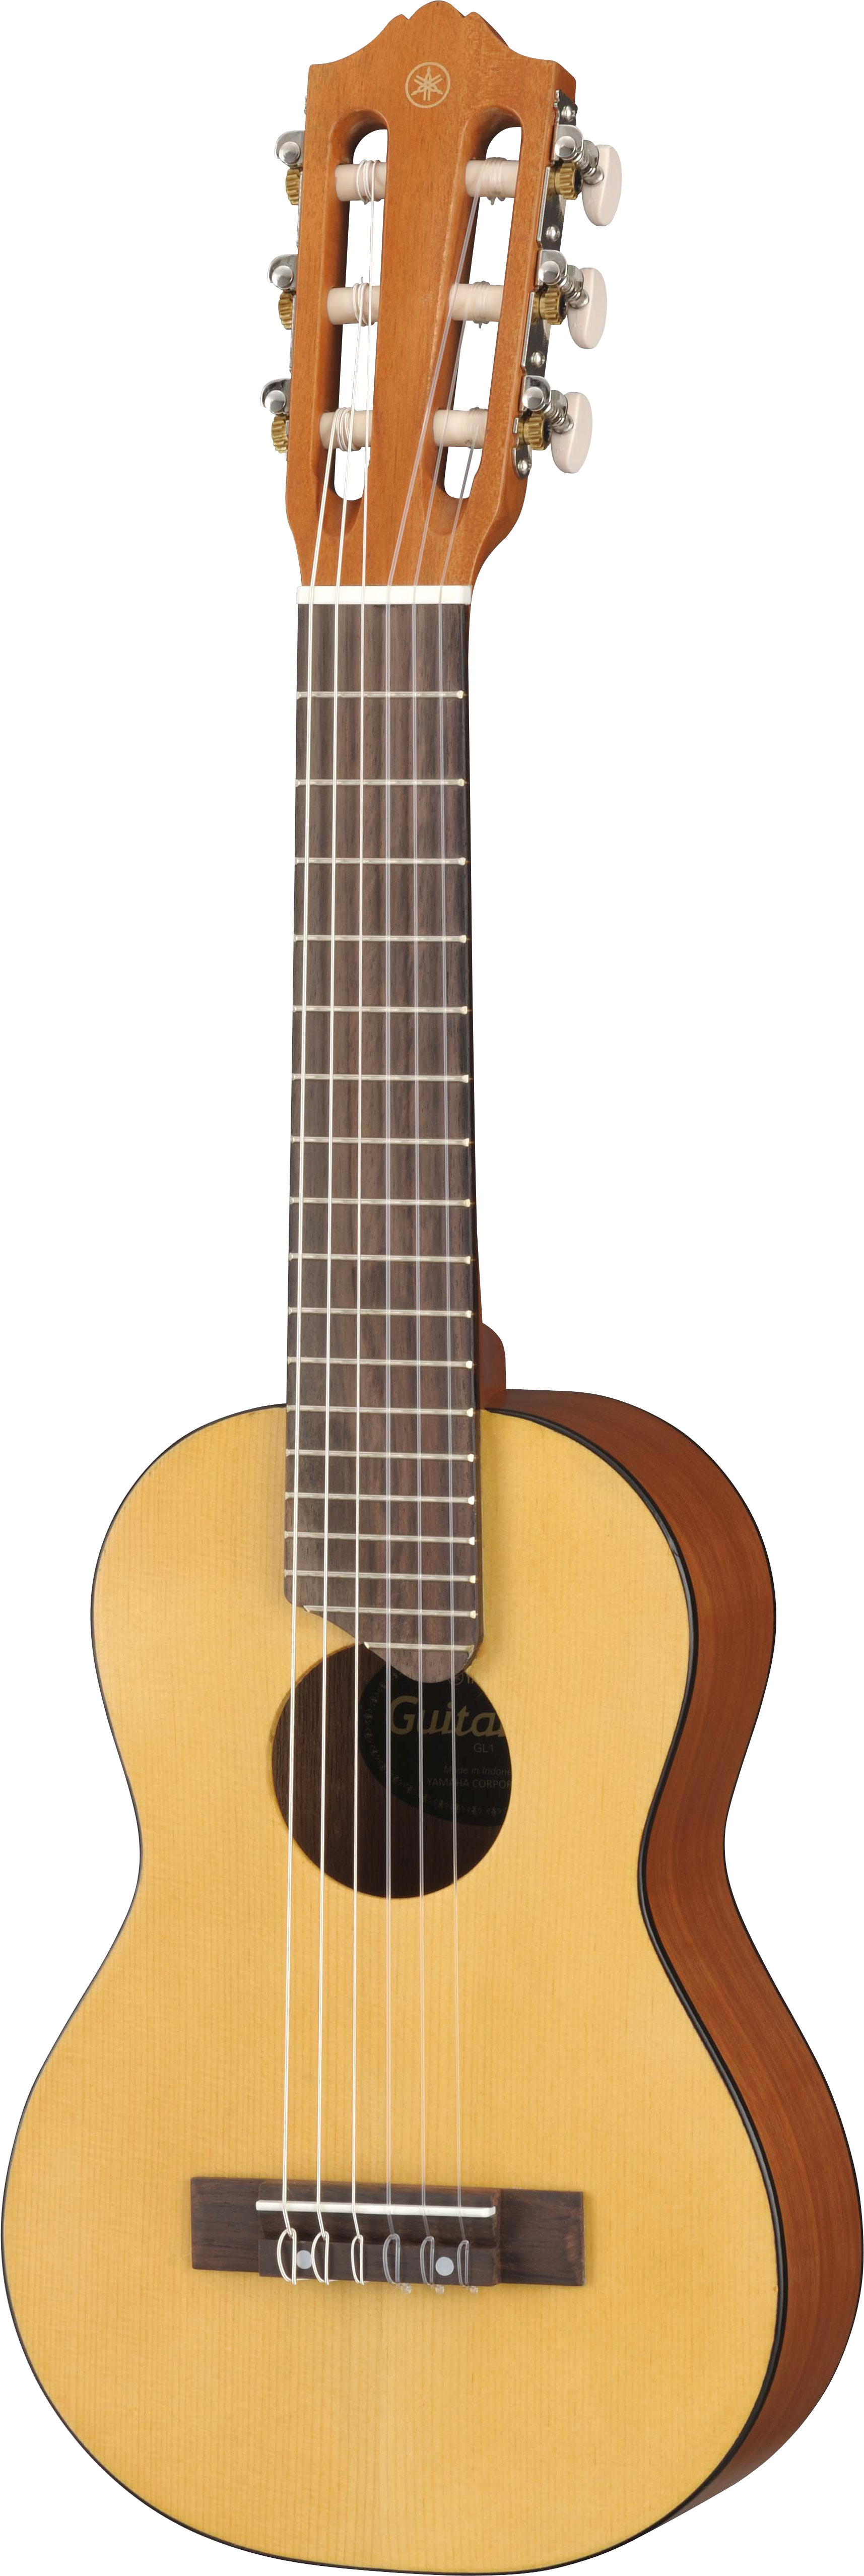 Yamaha GL1 классическая гитара малого размера (433мм)